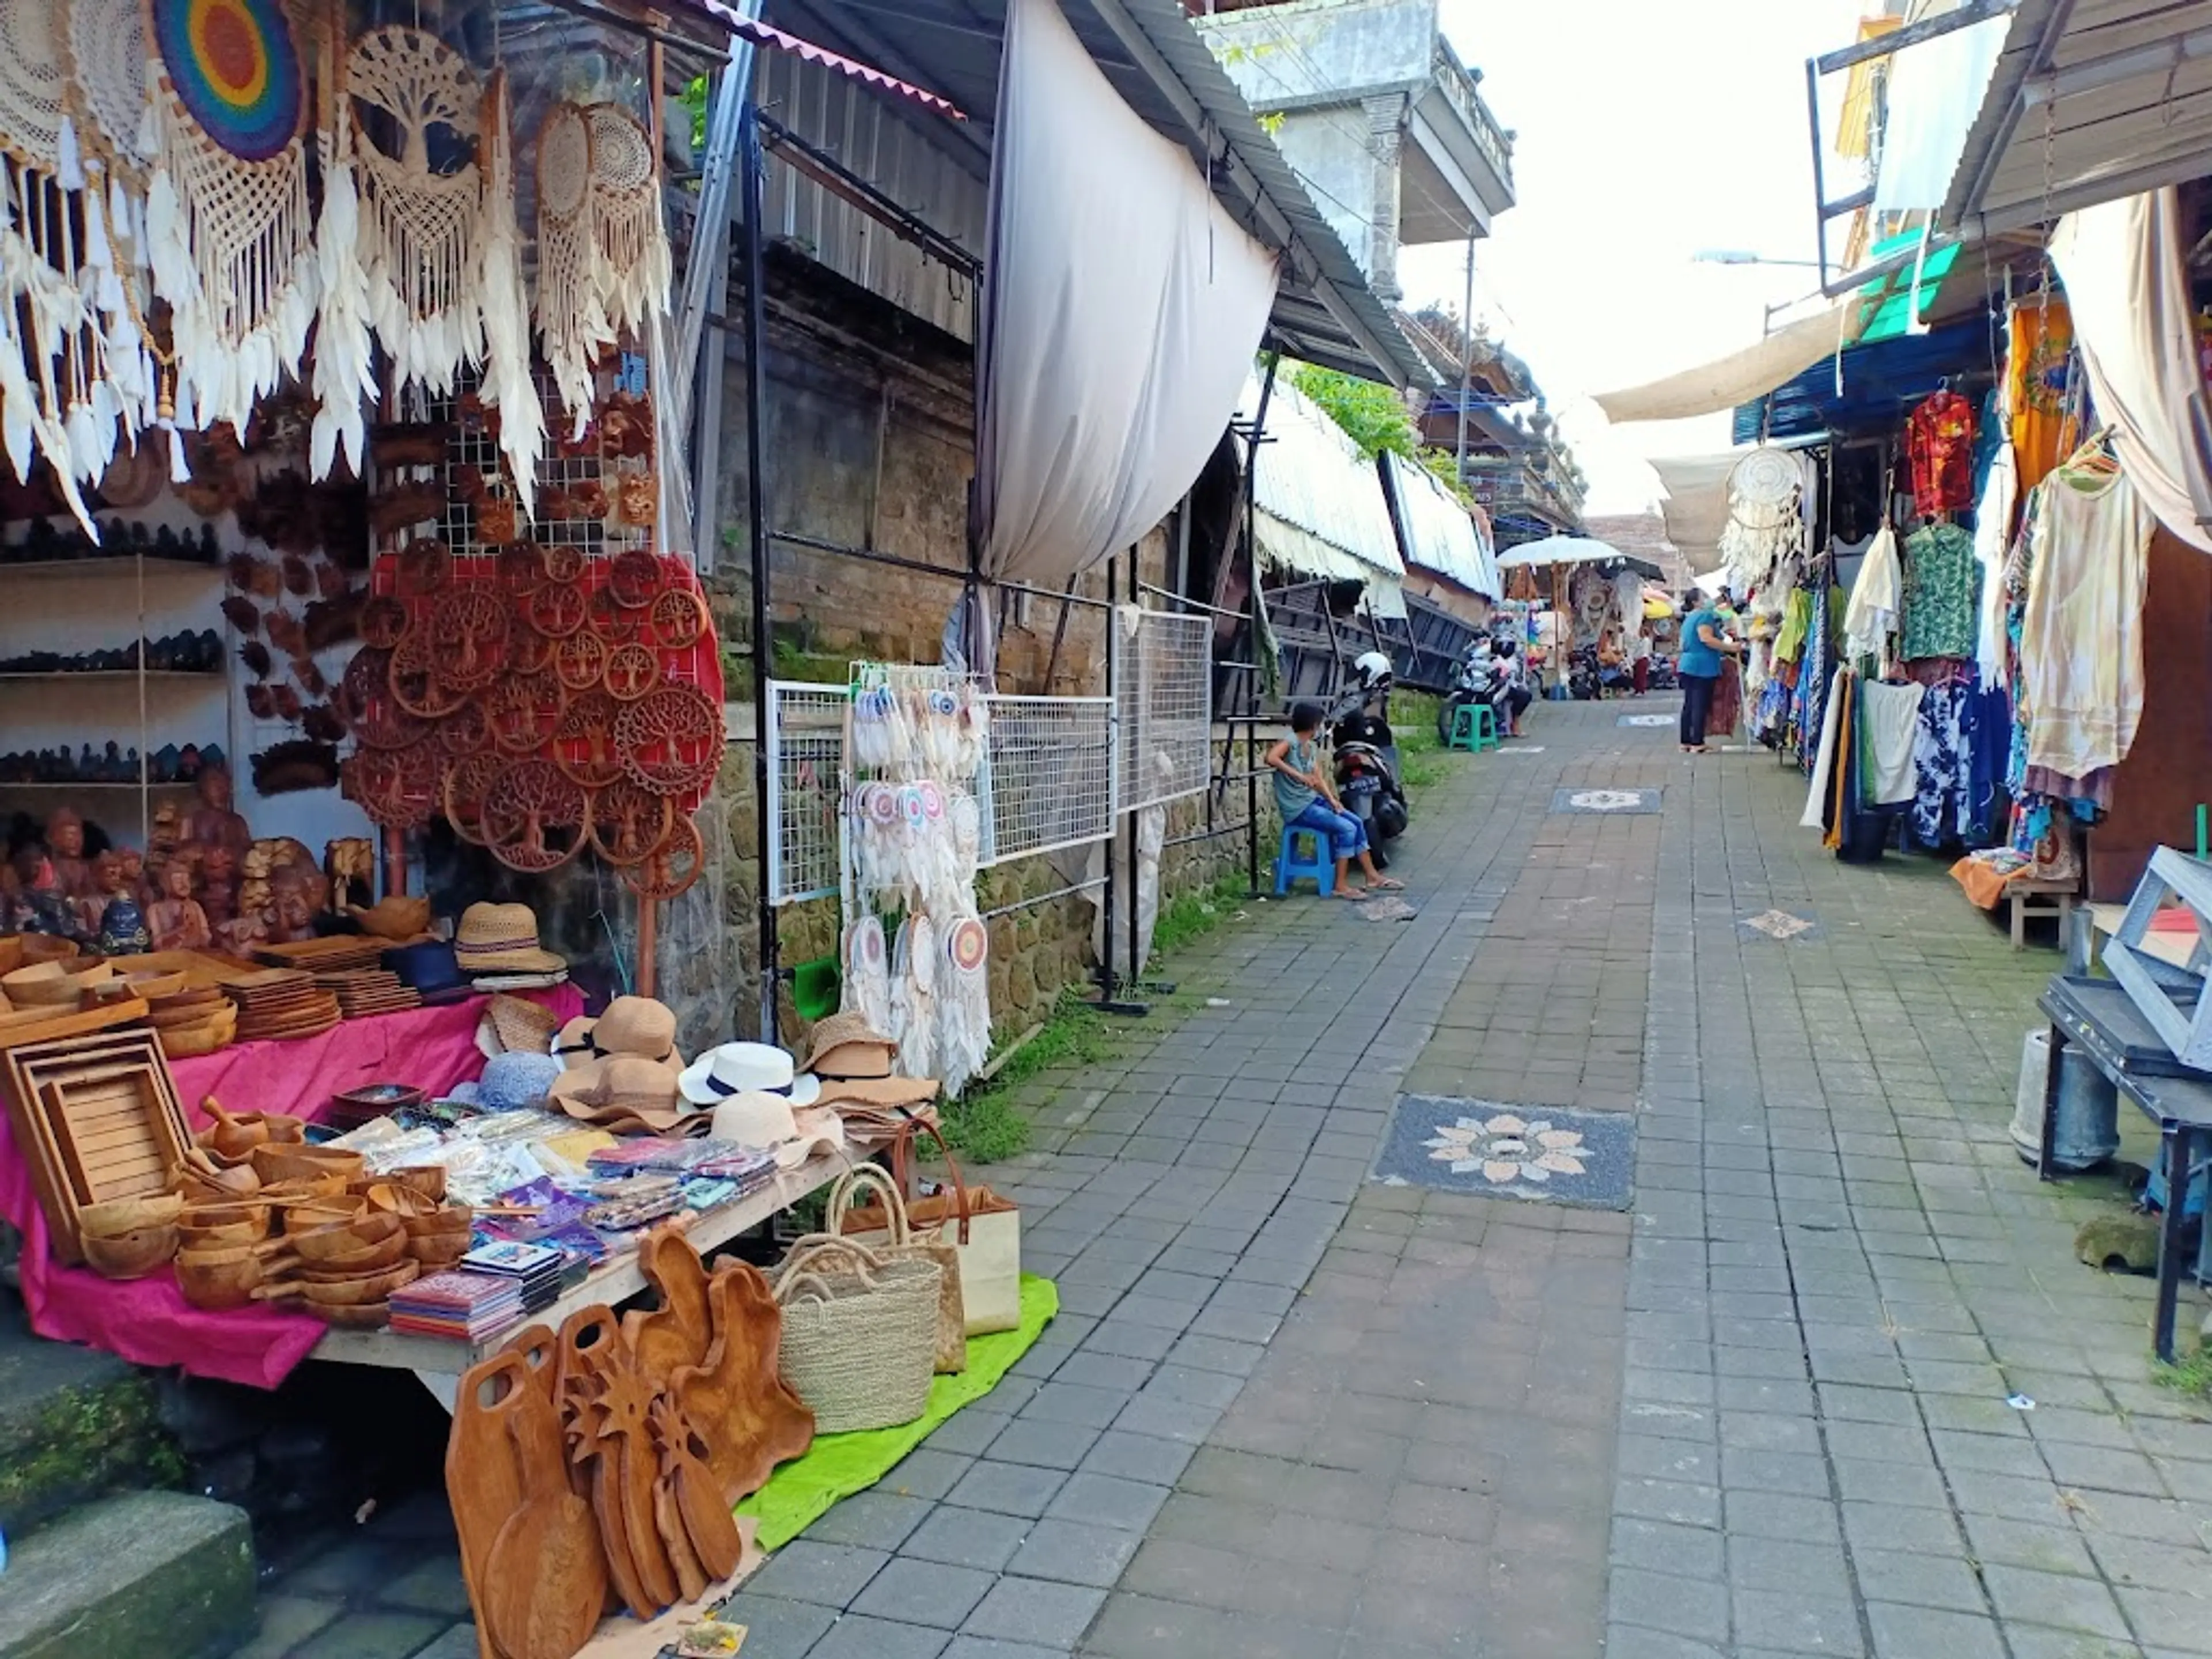 Local market in Ubud